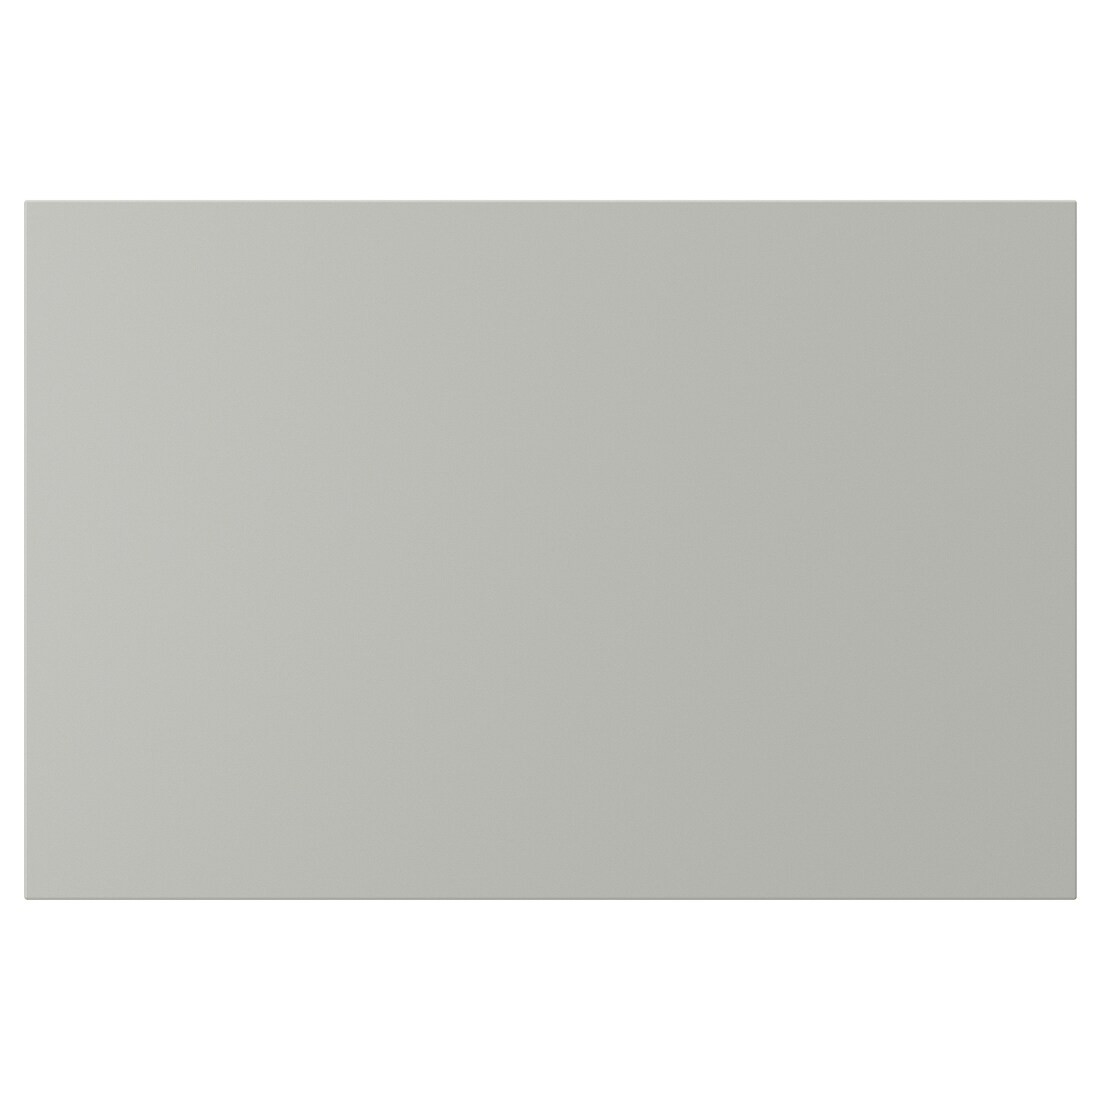 HAVSTORP Фронтальная панель ящика, светло-серый, 60x40 см